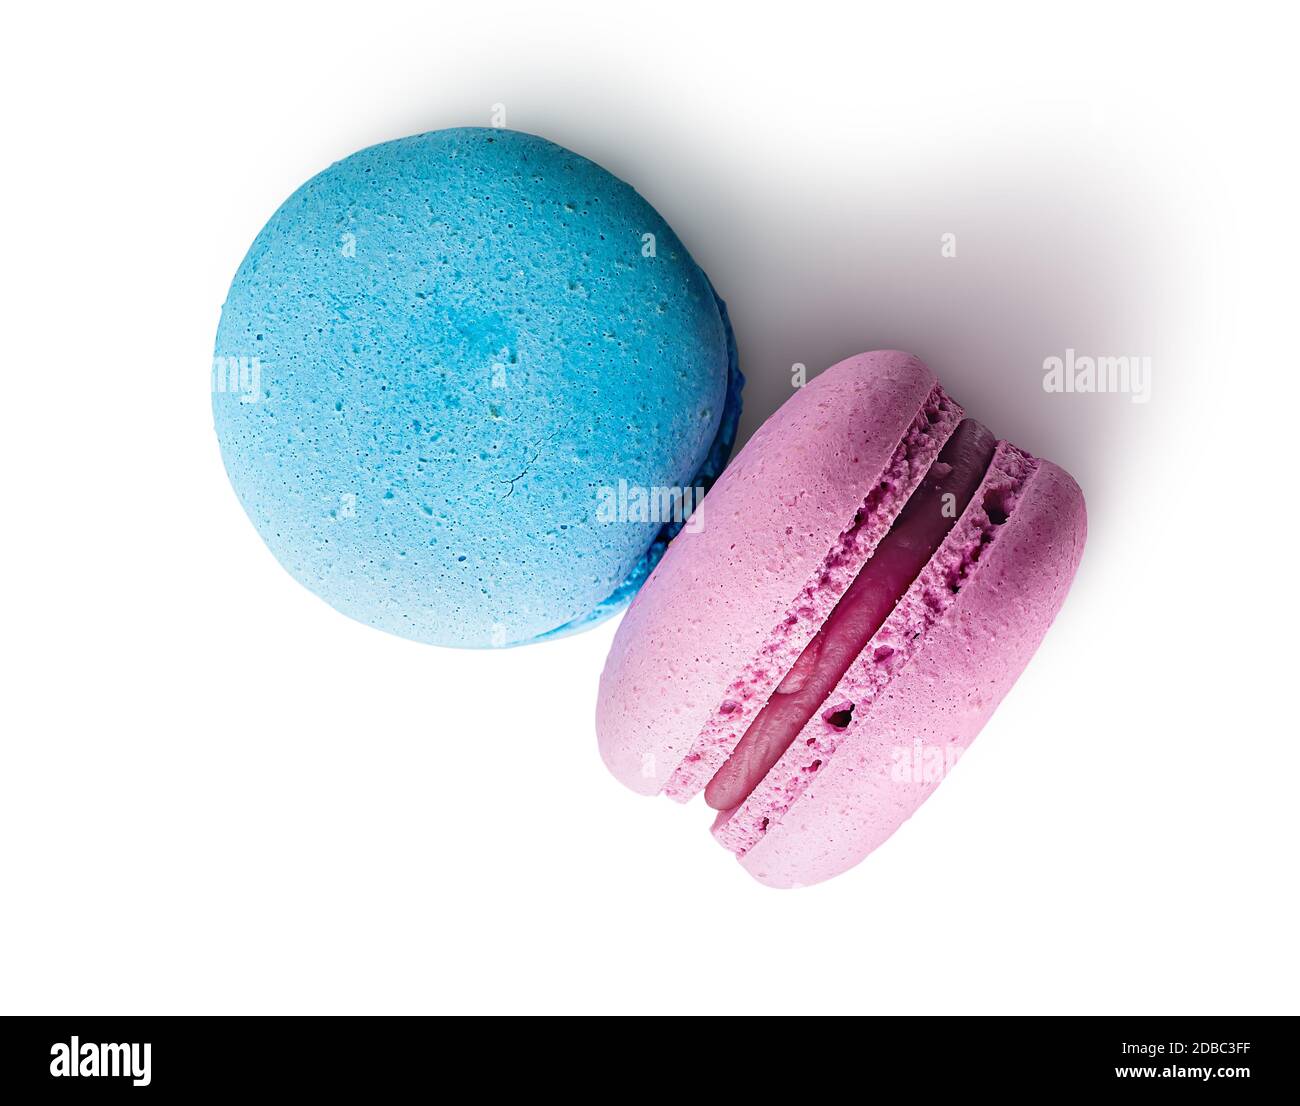 Vue de dessus de deux macarons rose bleu sur fond blanc Photo Stock - Alamy